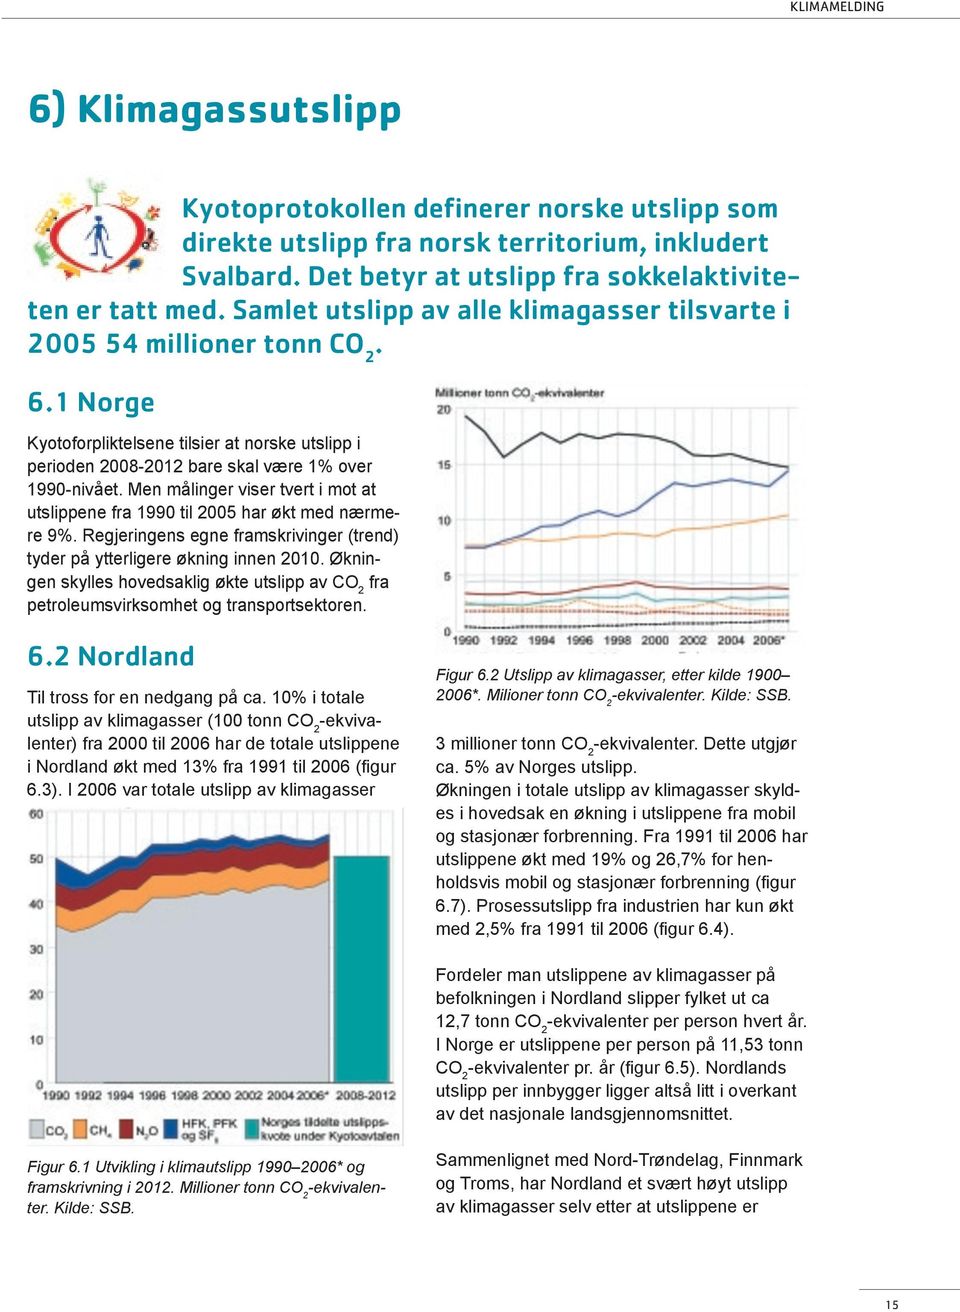 Men målinger viser tvert i mot at utslippene fra 1990 til 2005 har økt med nærmere 9%. Regjeringens egne framskrivinger (trend) tyder på ytterligere økning innen 2010.